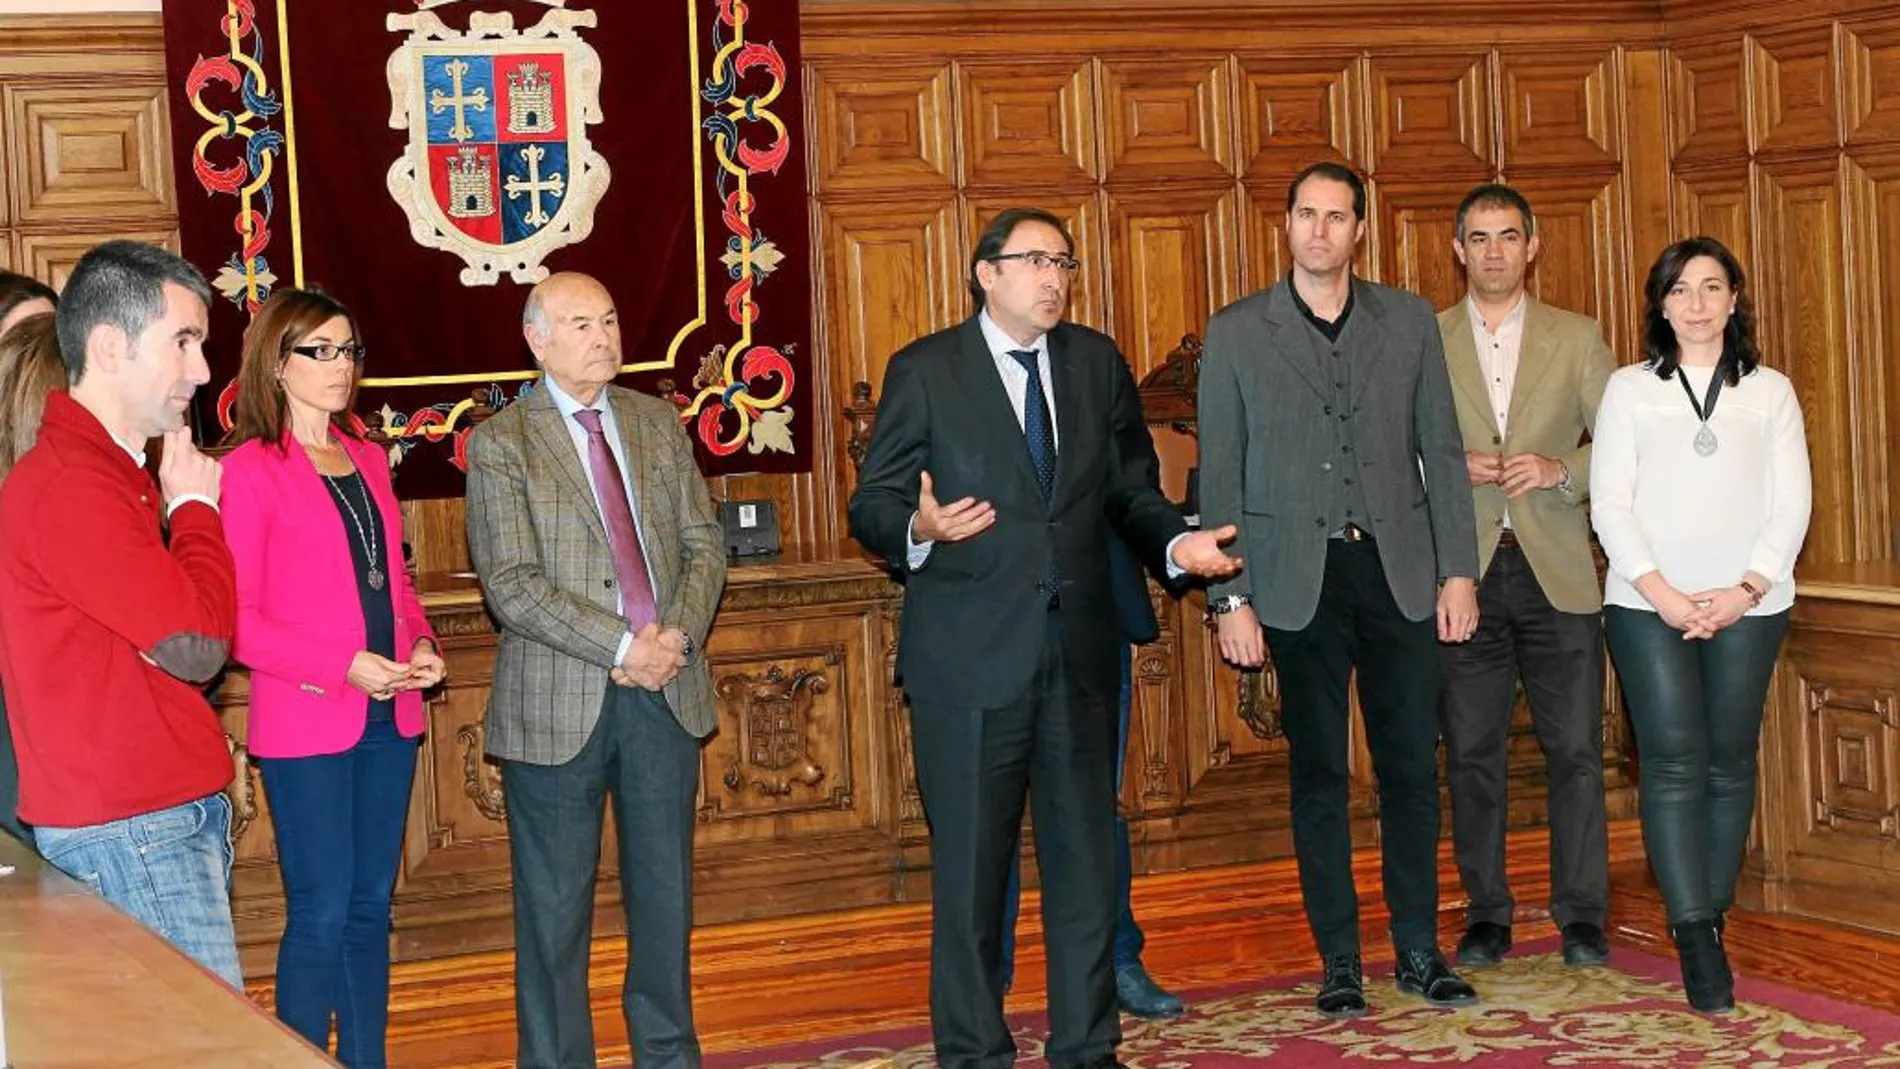 El alcalde de Palencia, Alfonso Polanco, interviene en la entrega de los diplomas, en presencia del presidente de la Cámara de Comercio palentina, Vicente Villagrá, y de alumnos participantes